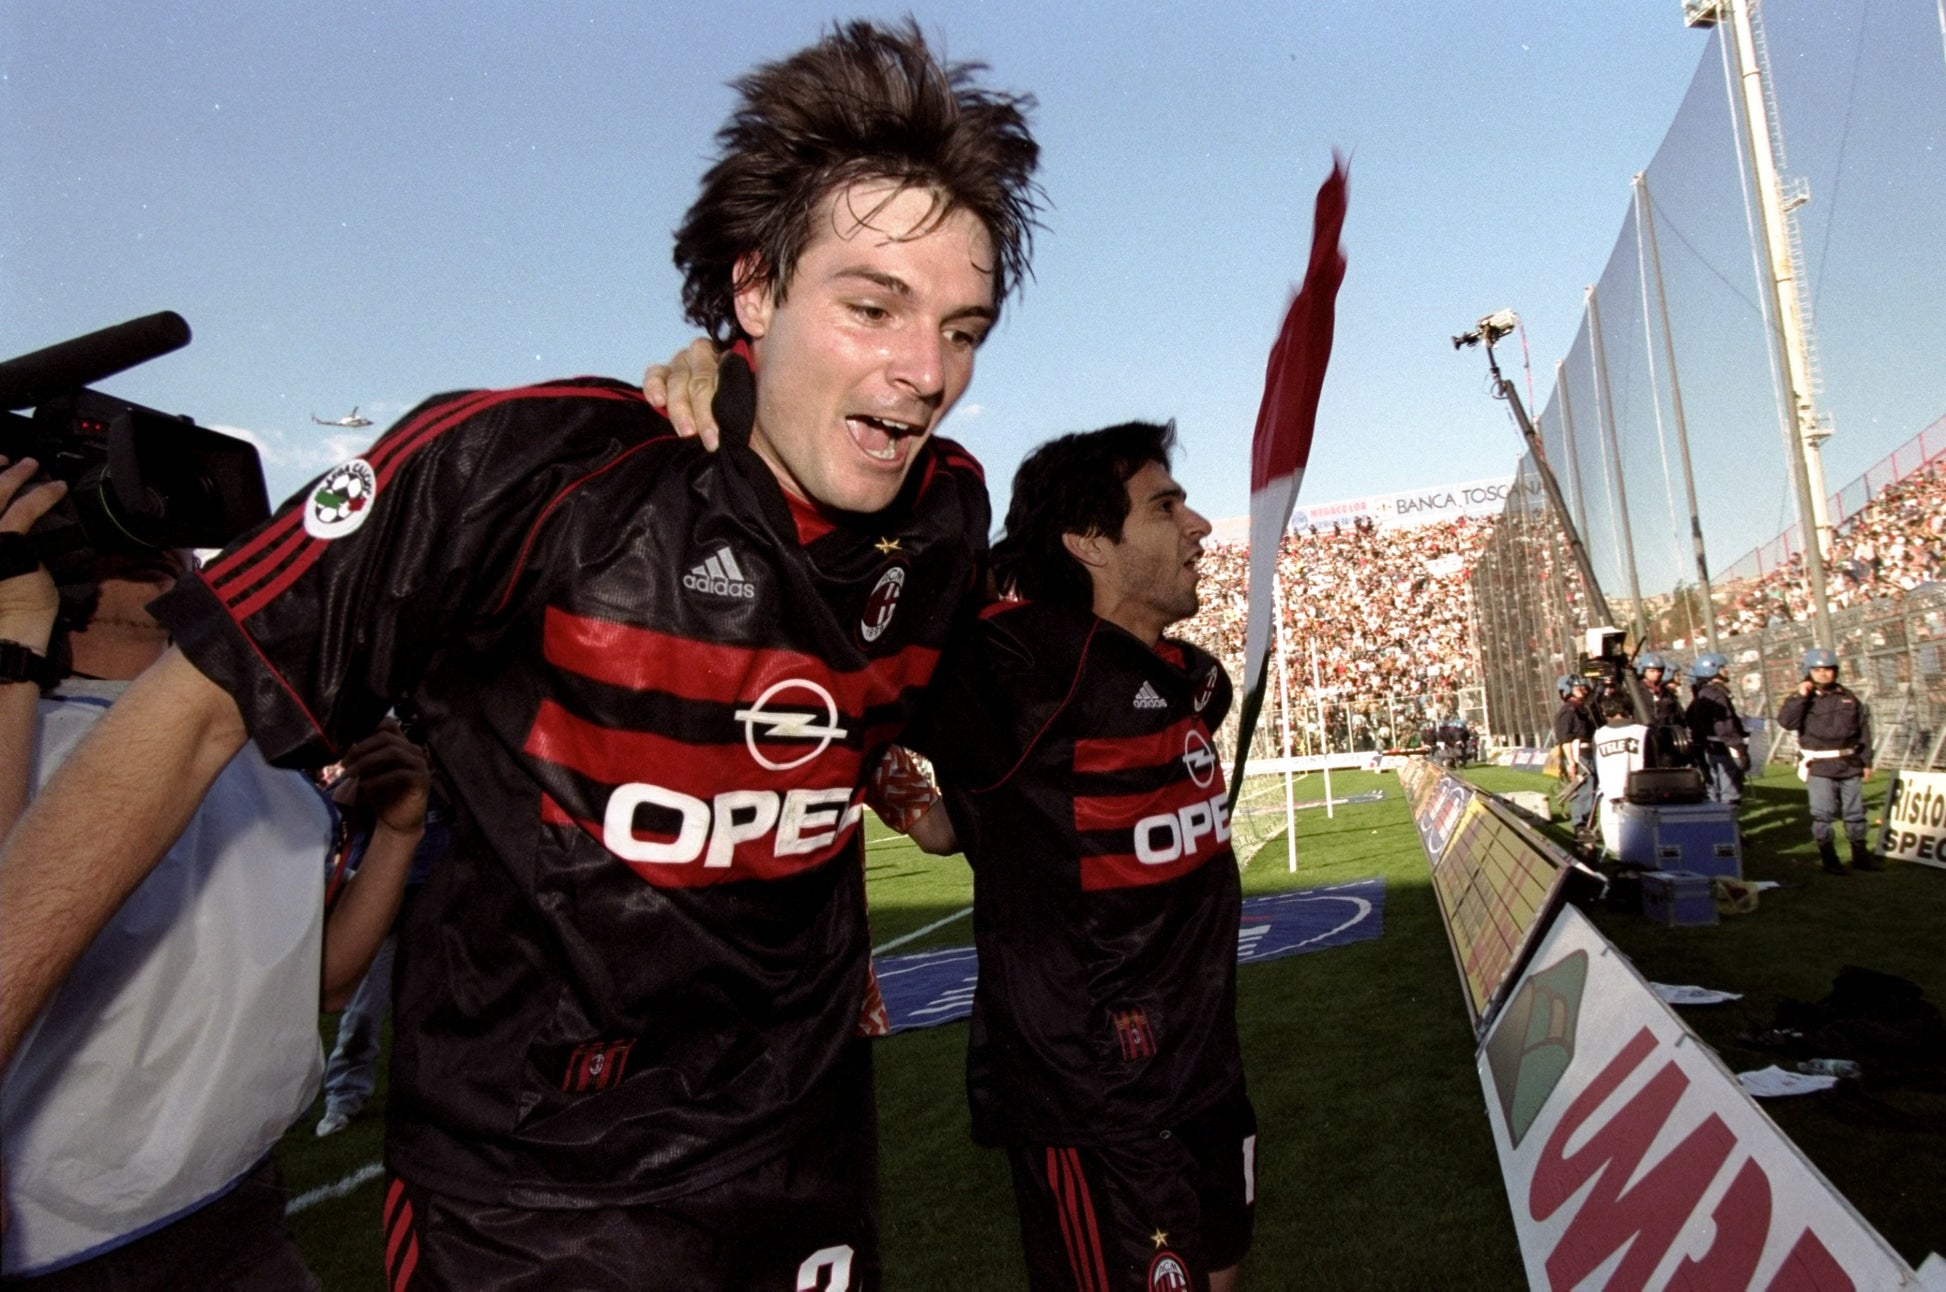 AC Milan 1998/99 Away Kit 